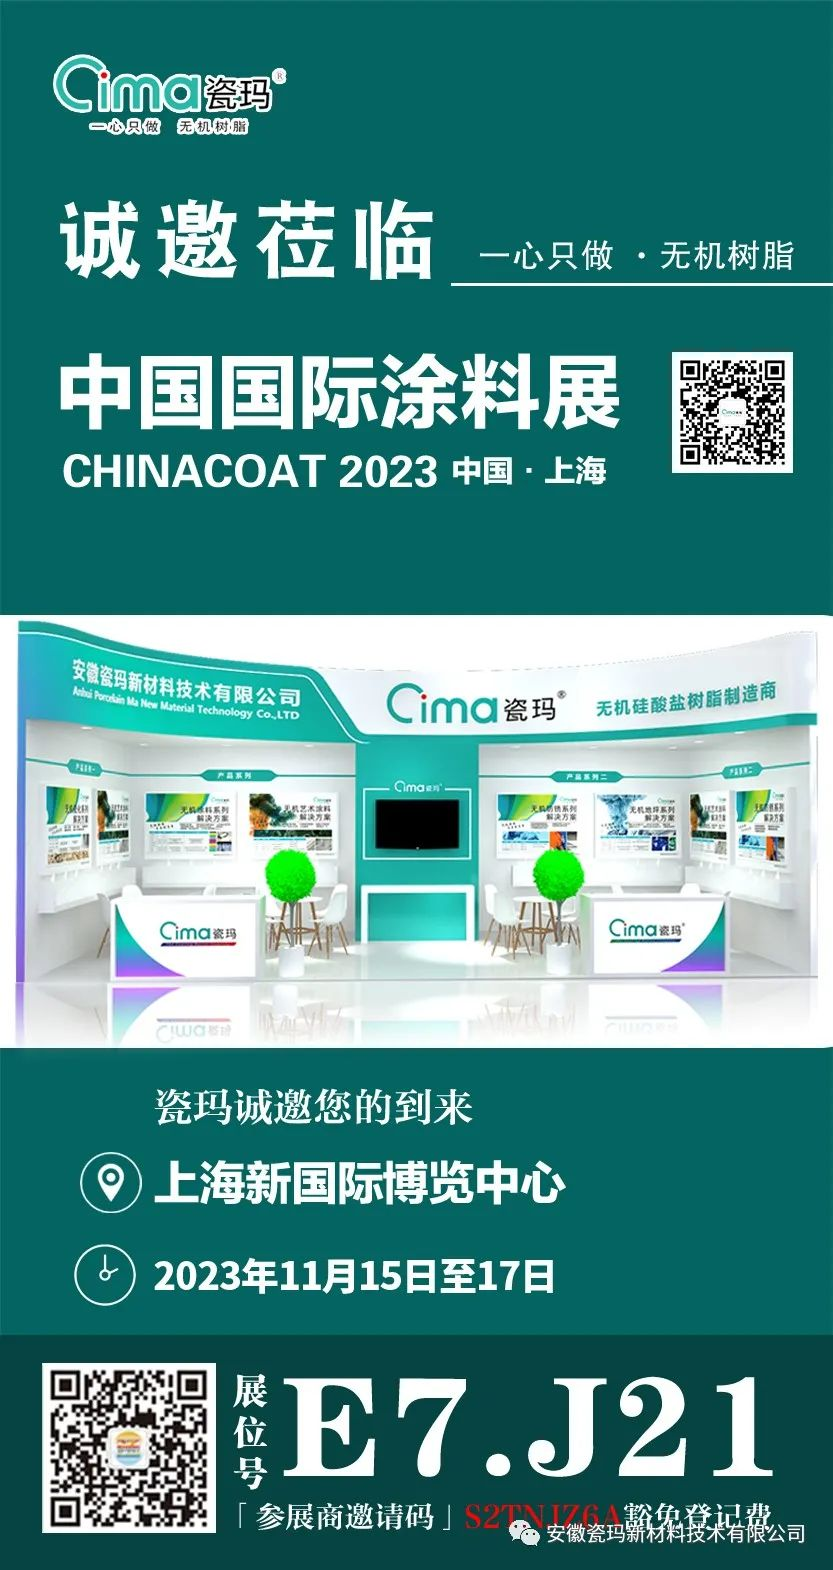 CHINACOAT 2023丨安徽瓷玛与您相约上海_慧正资讯_化塑产业互联网